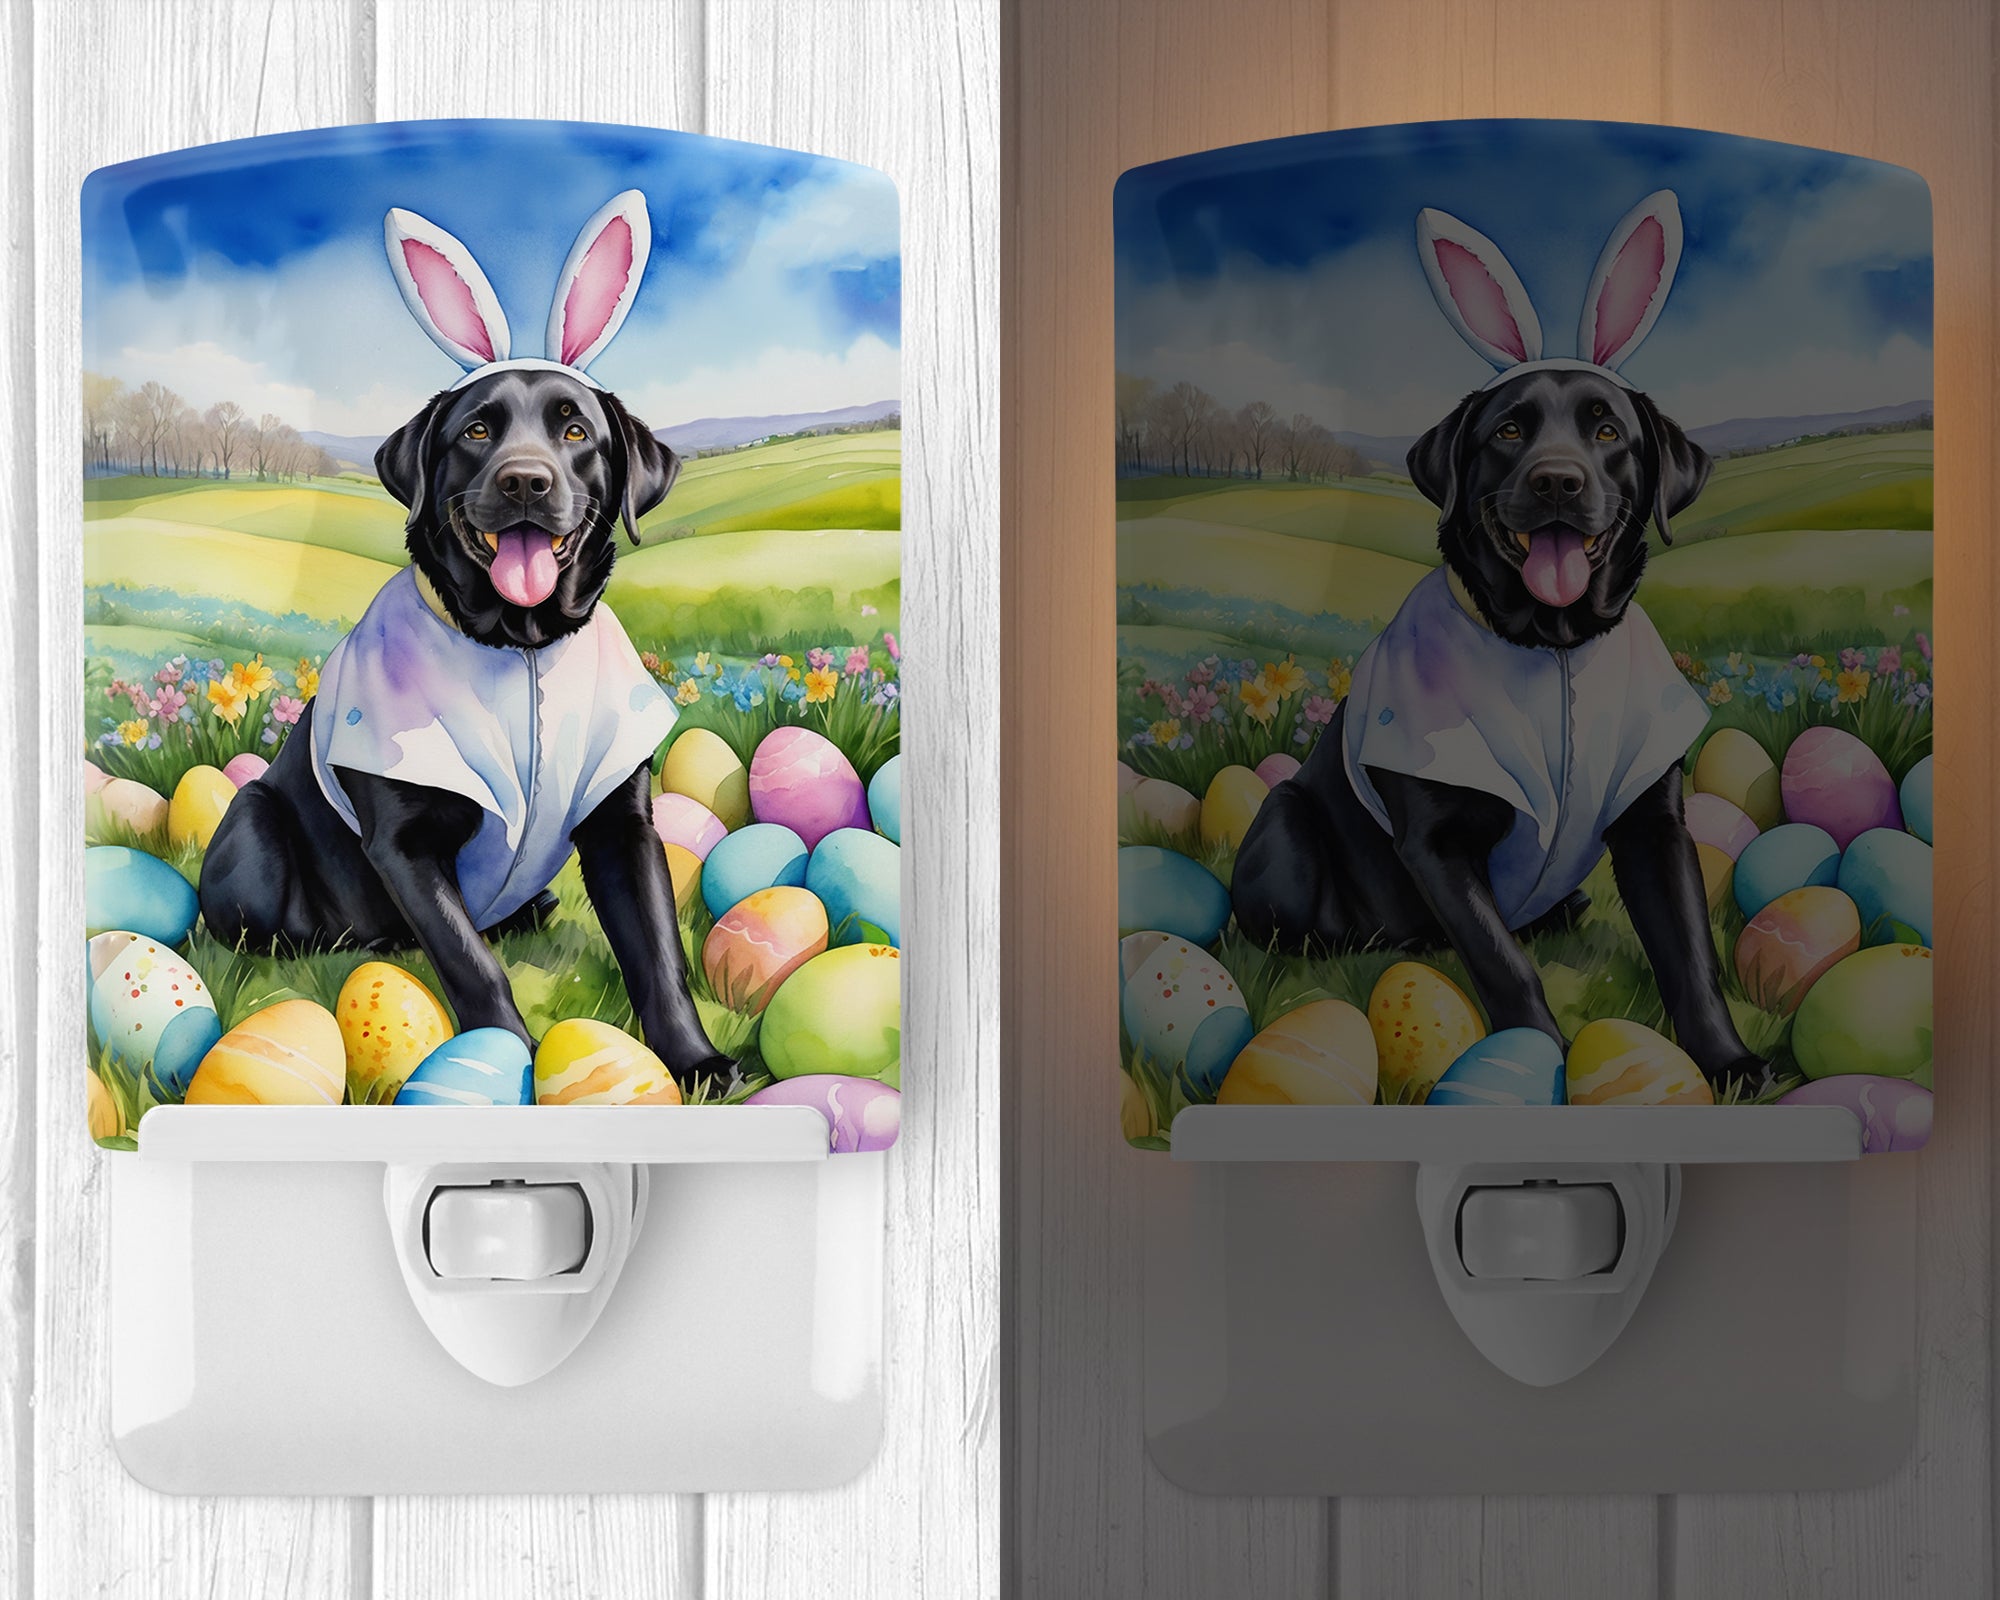 Buy this Black Labrador Retriever Easter Egg Hunt Ceramic Night Light